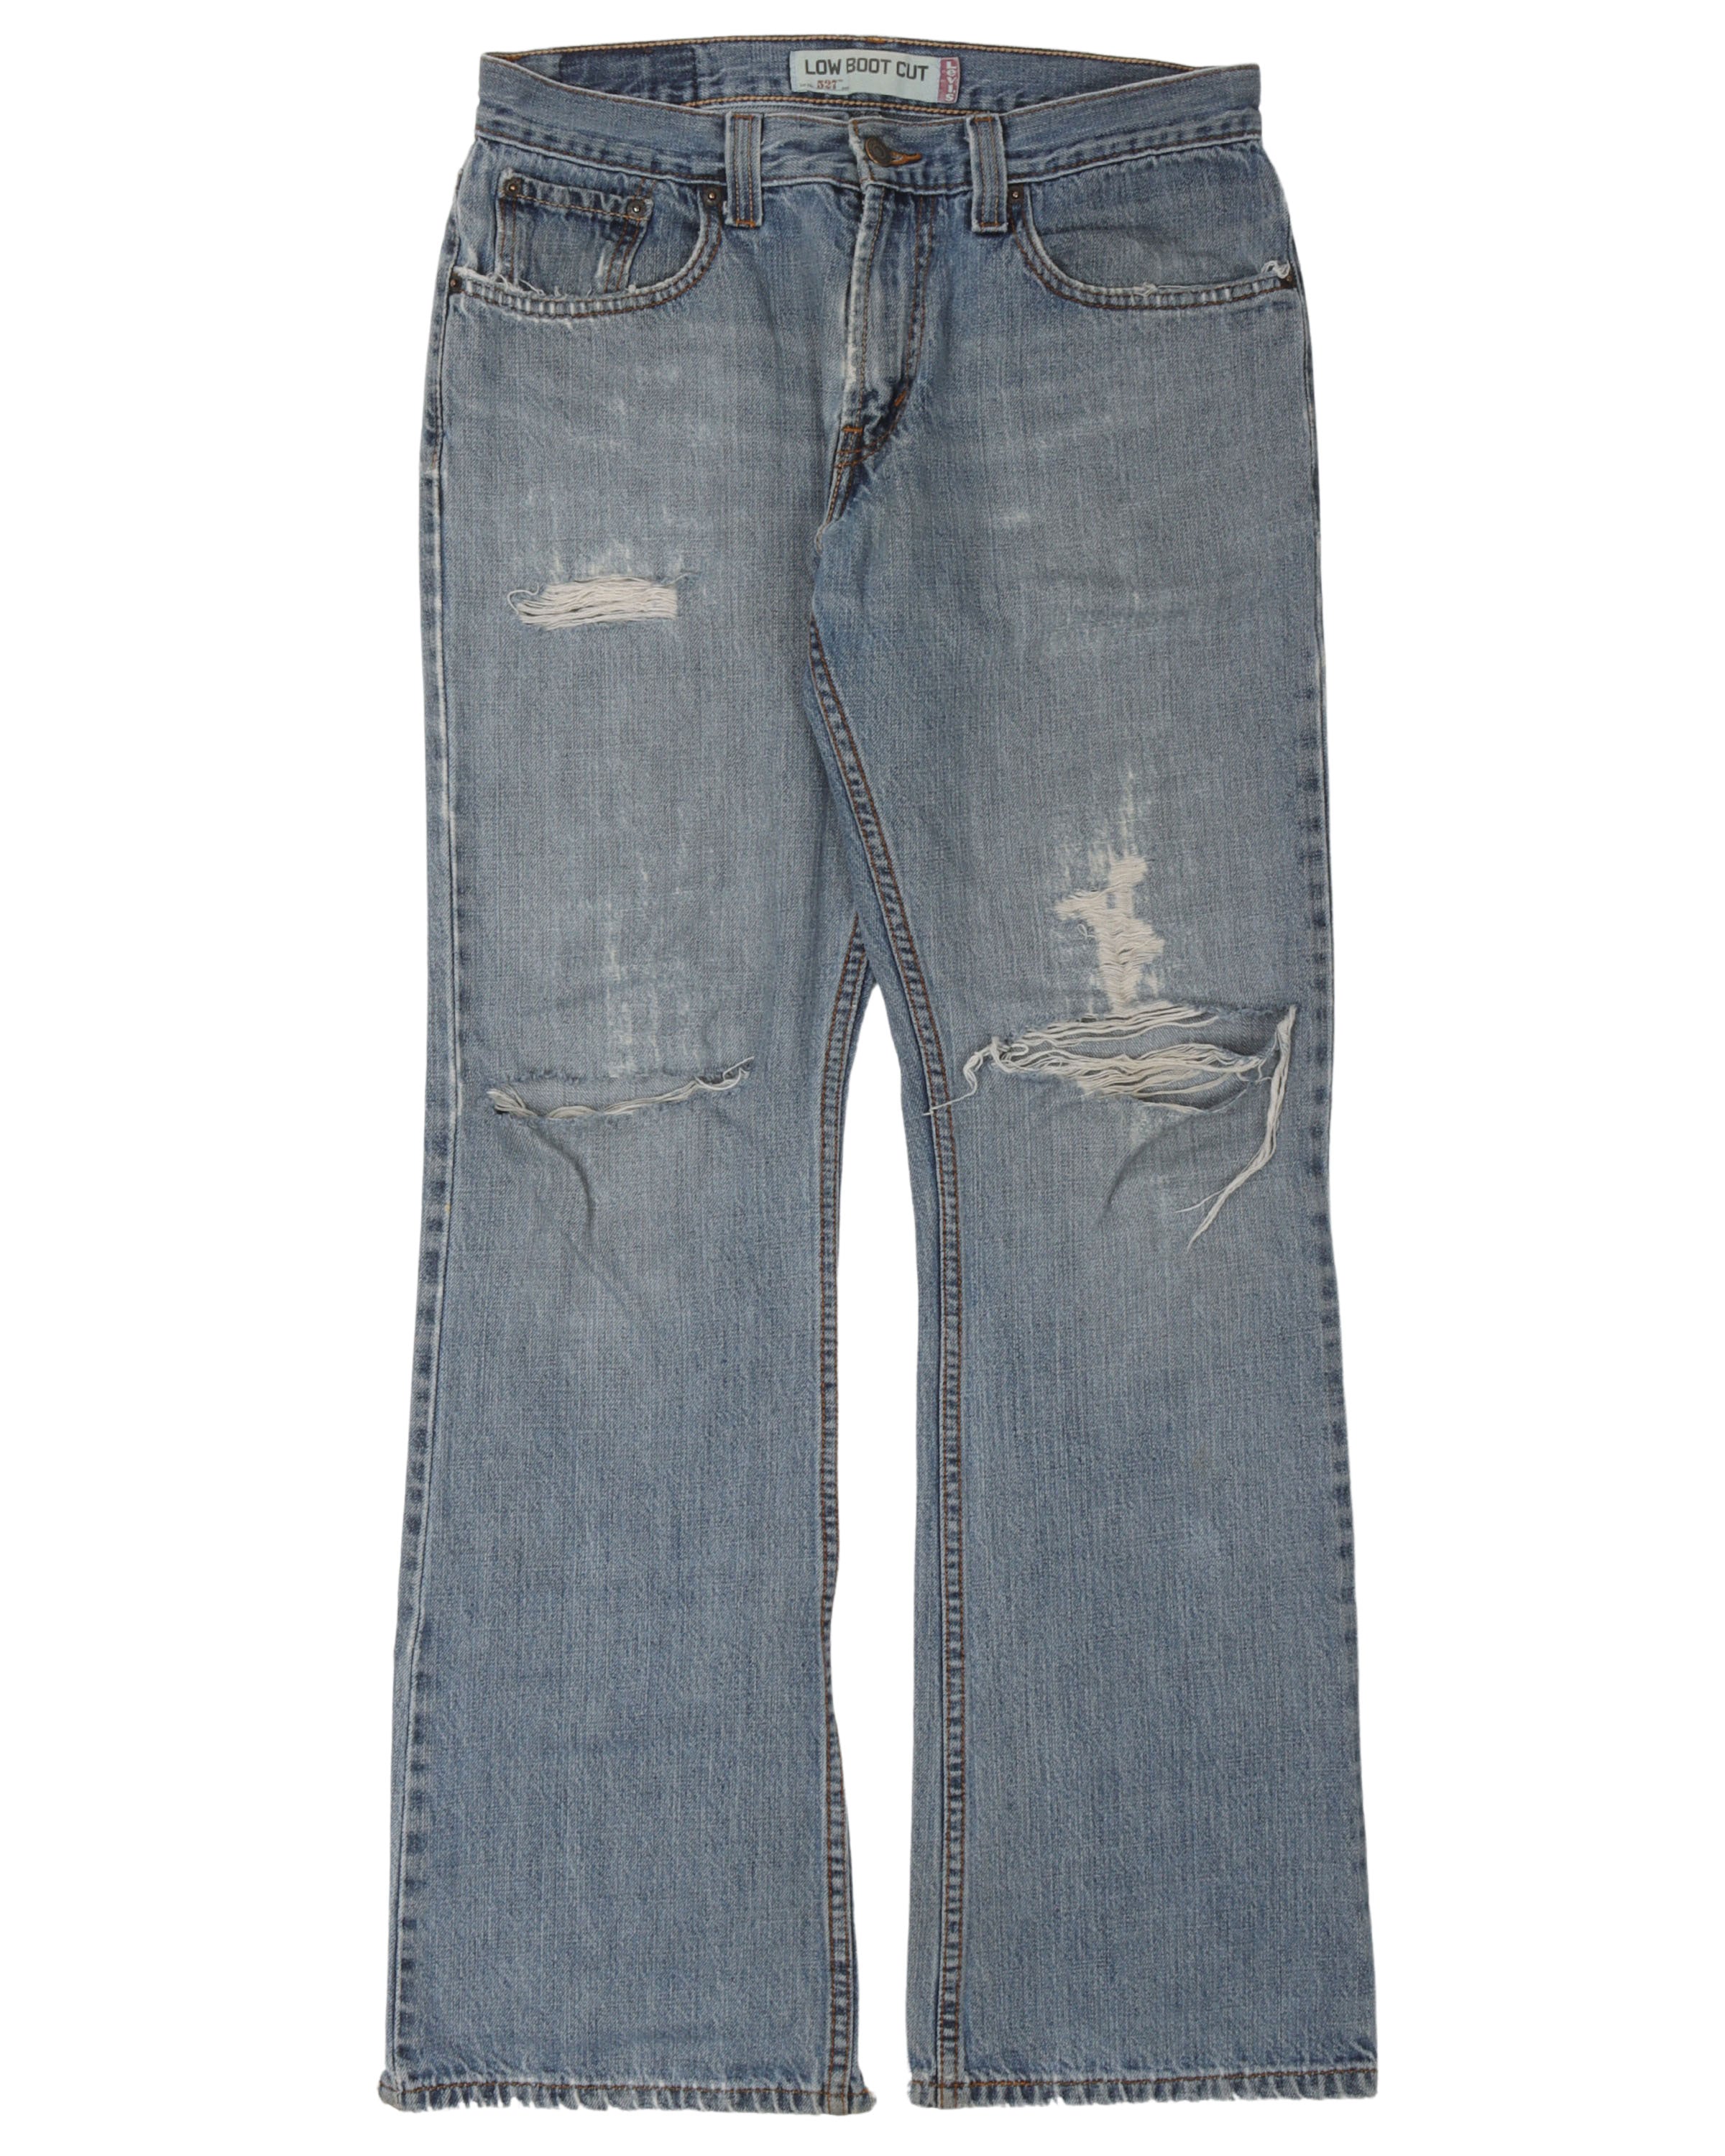 Vintage Levi's Flared 527 Jeans